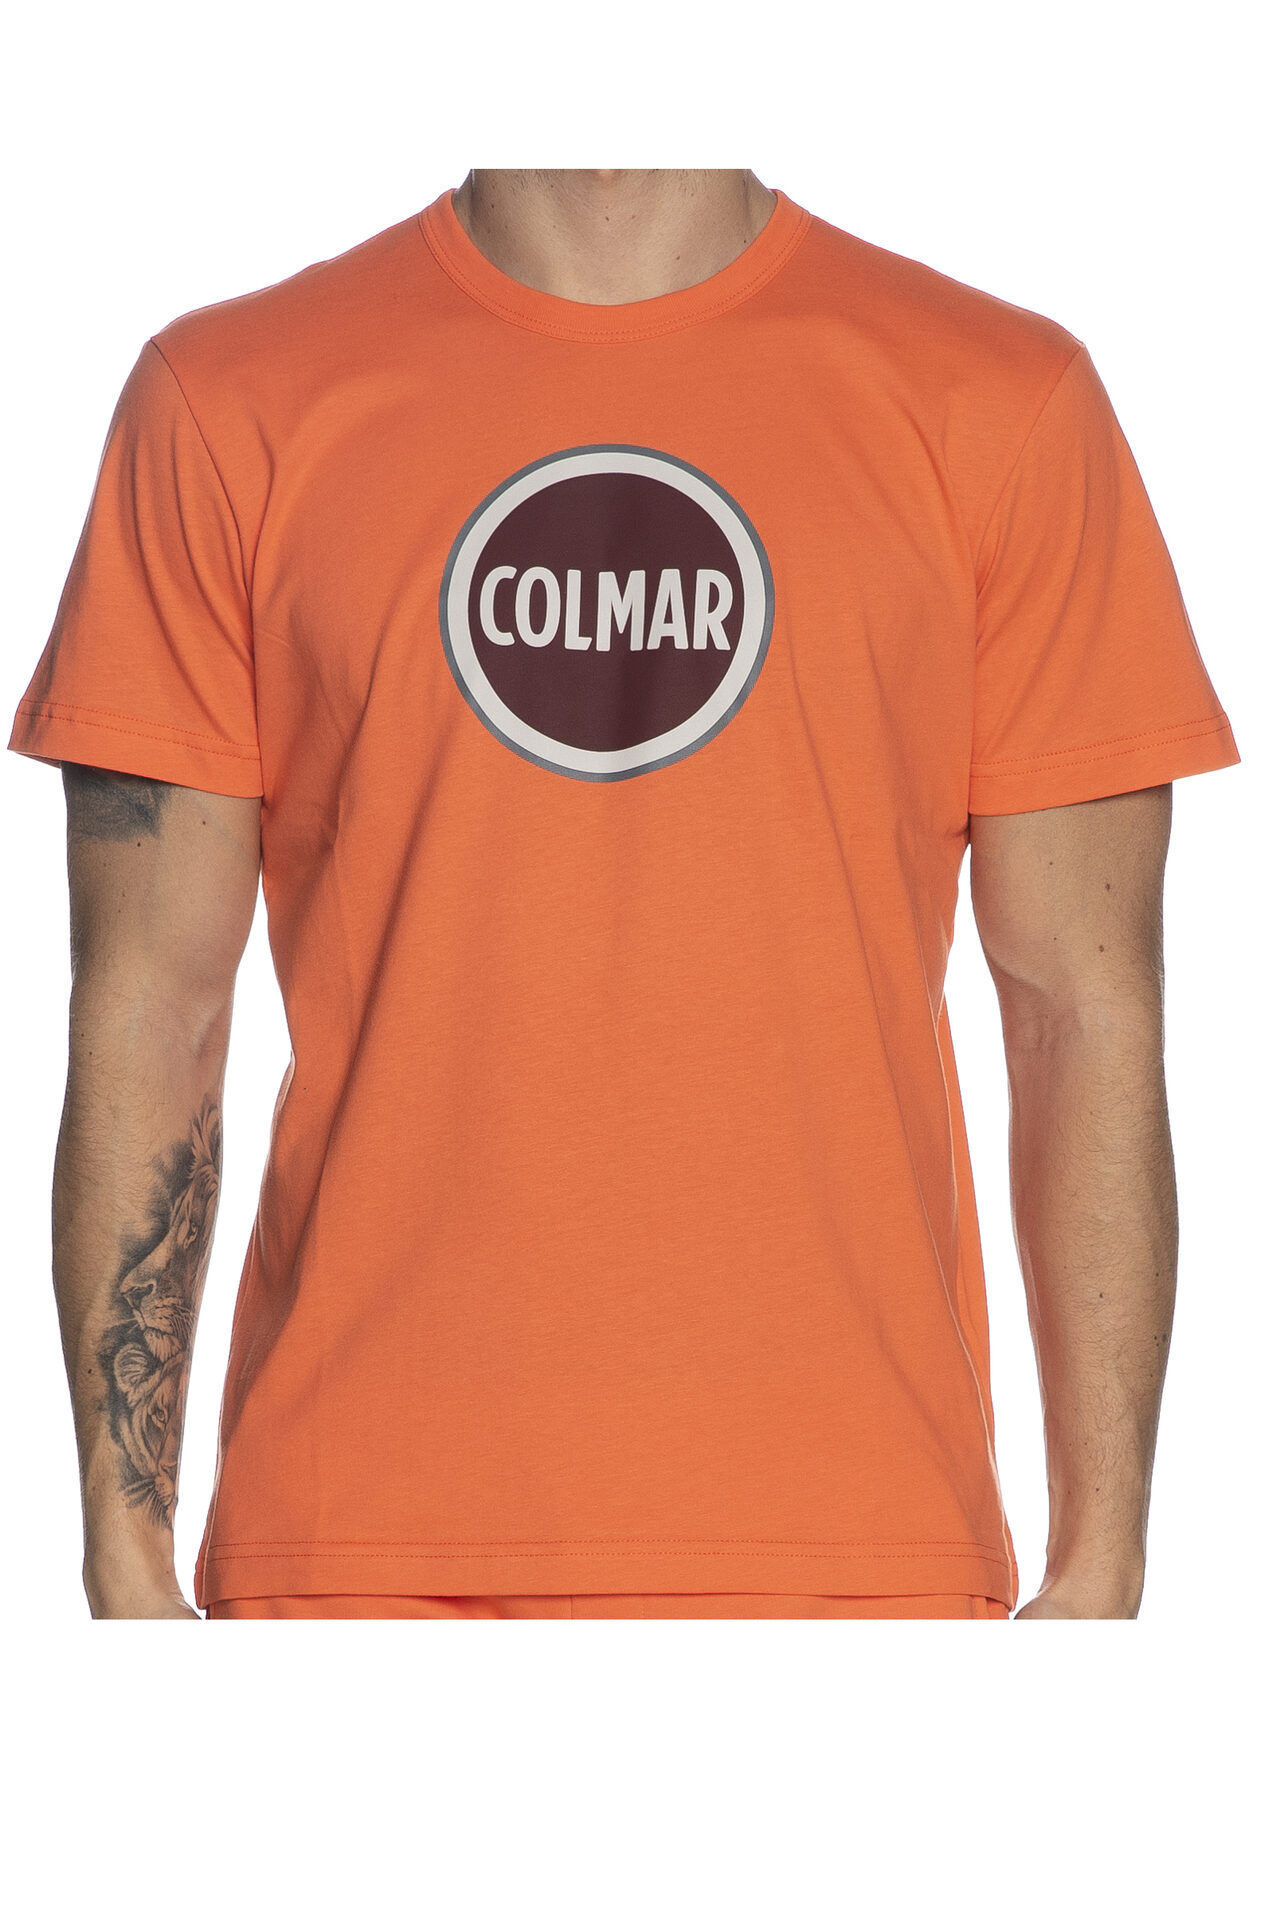 T shirt Colmar Originals Frida da uomo arancio